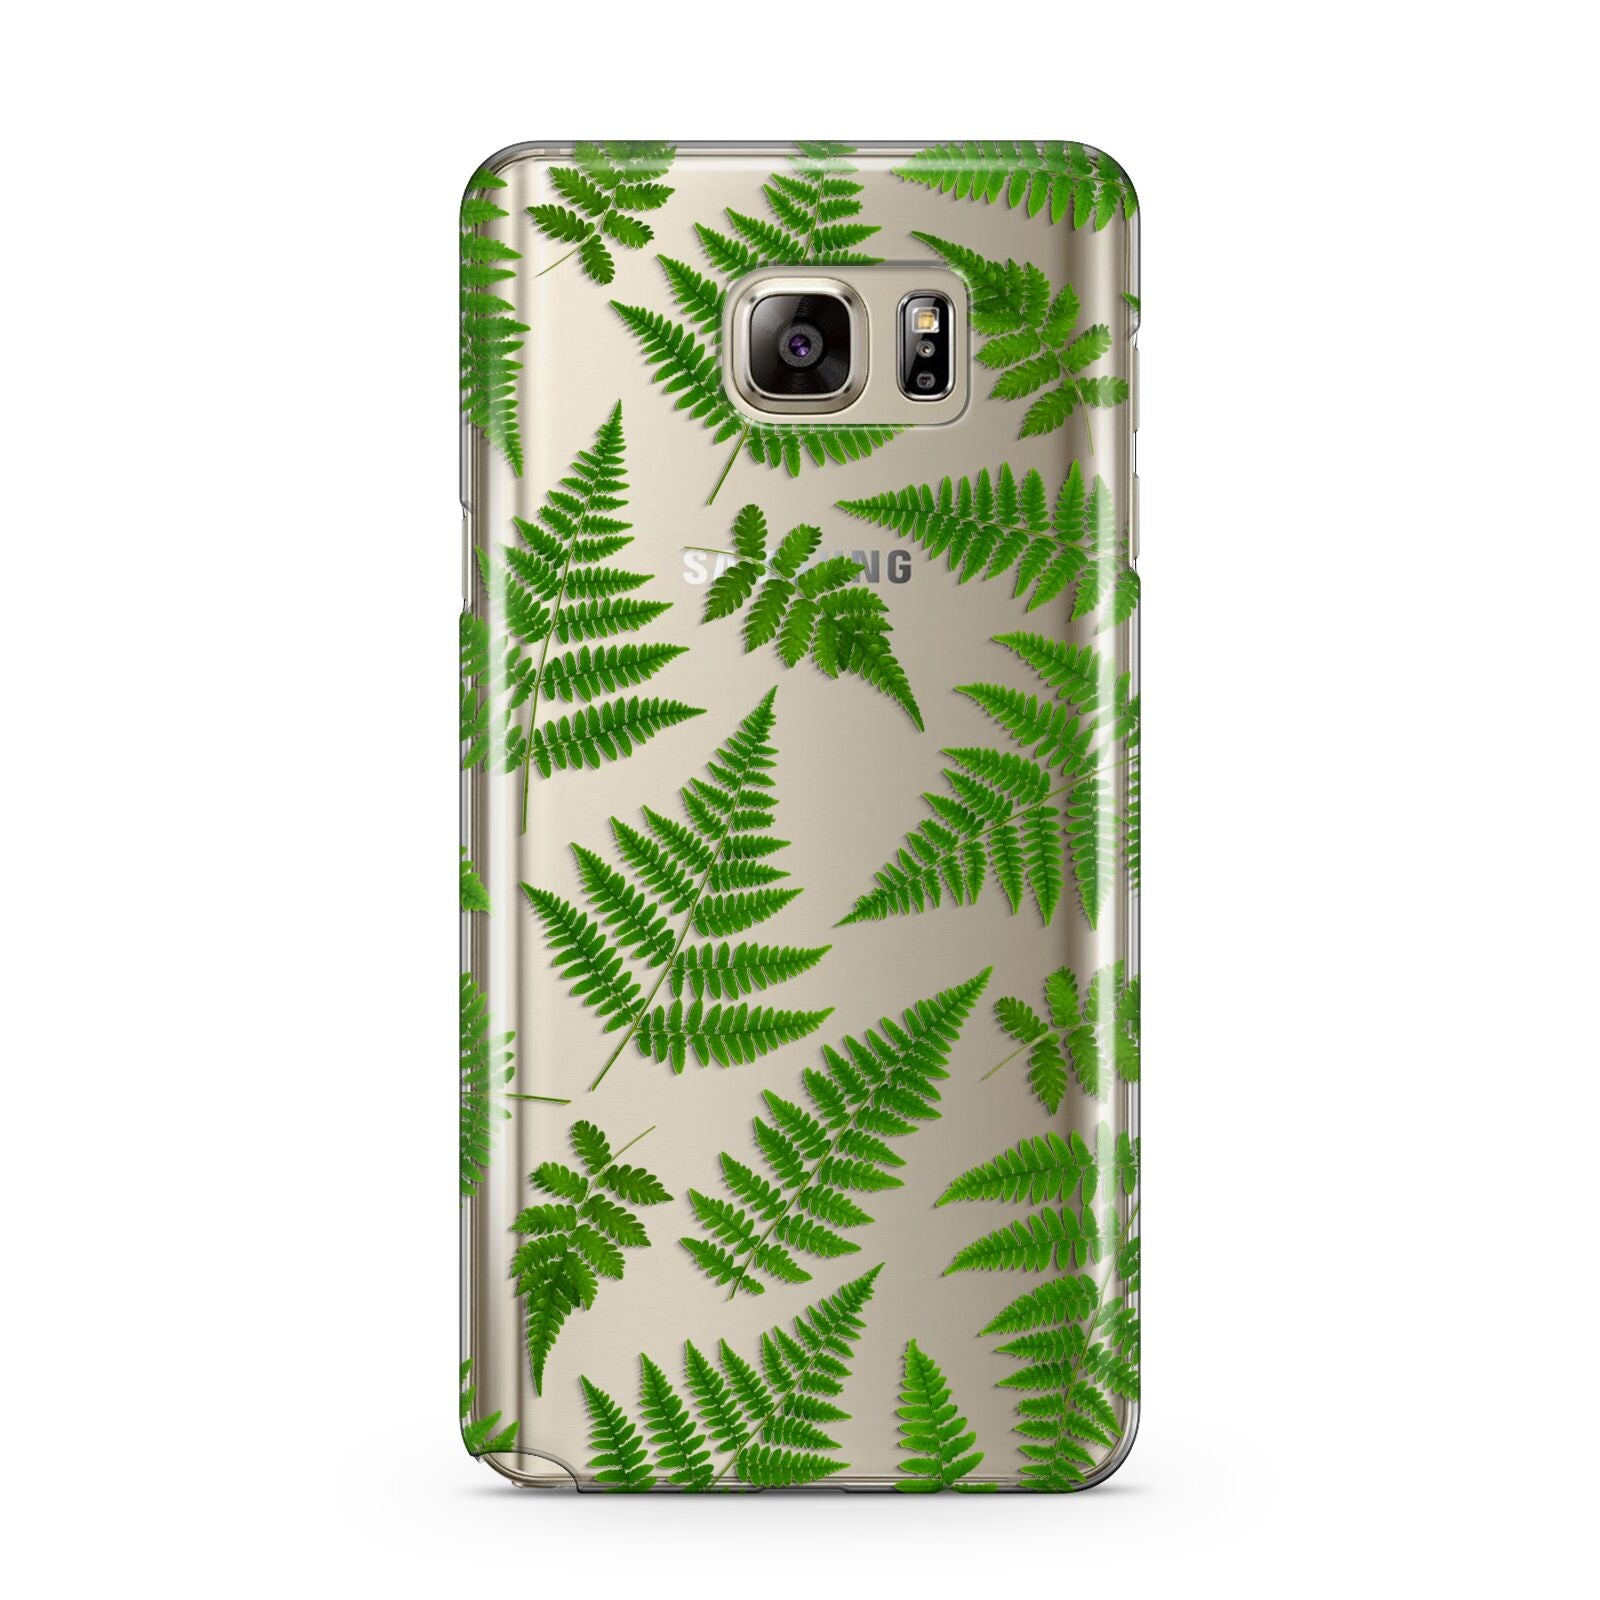 Fern Leaf Samsung Galaxy Note 5 Case